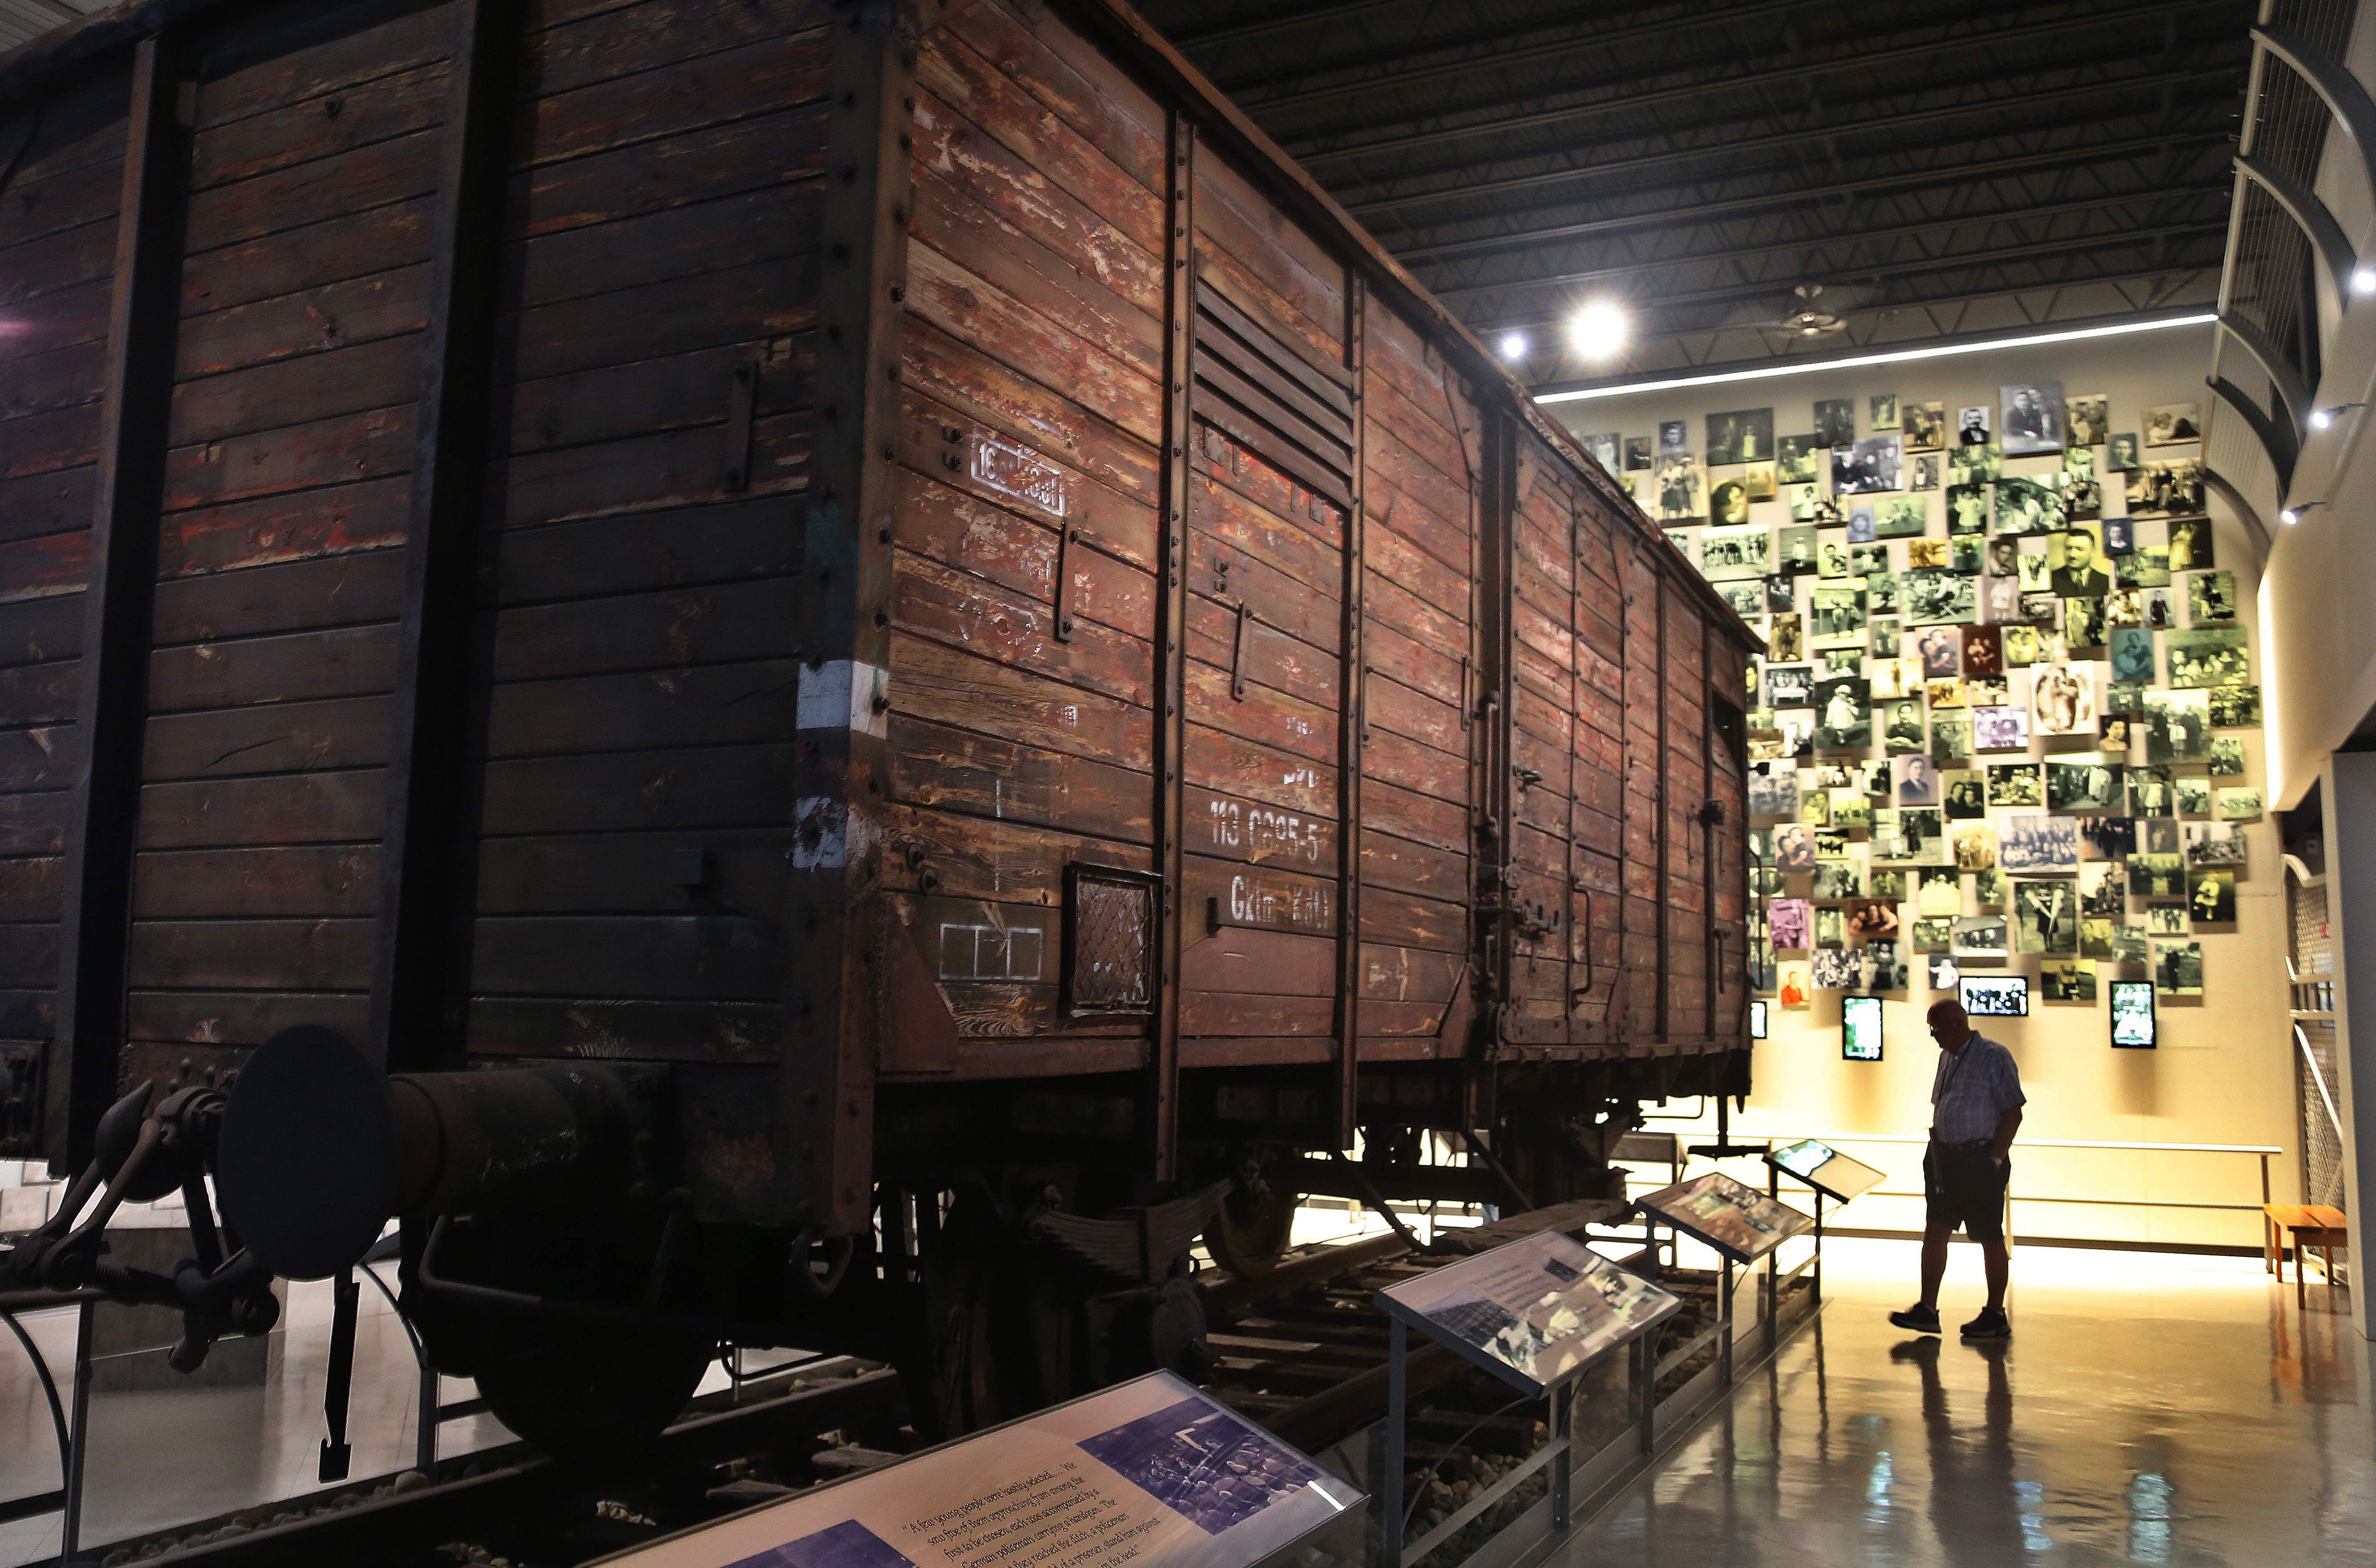 Holocaust museum